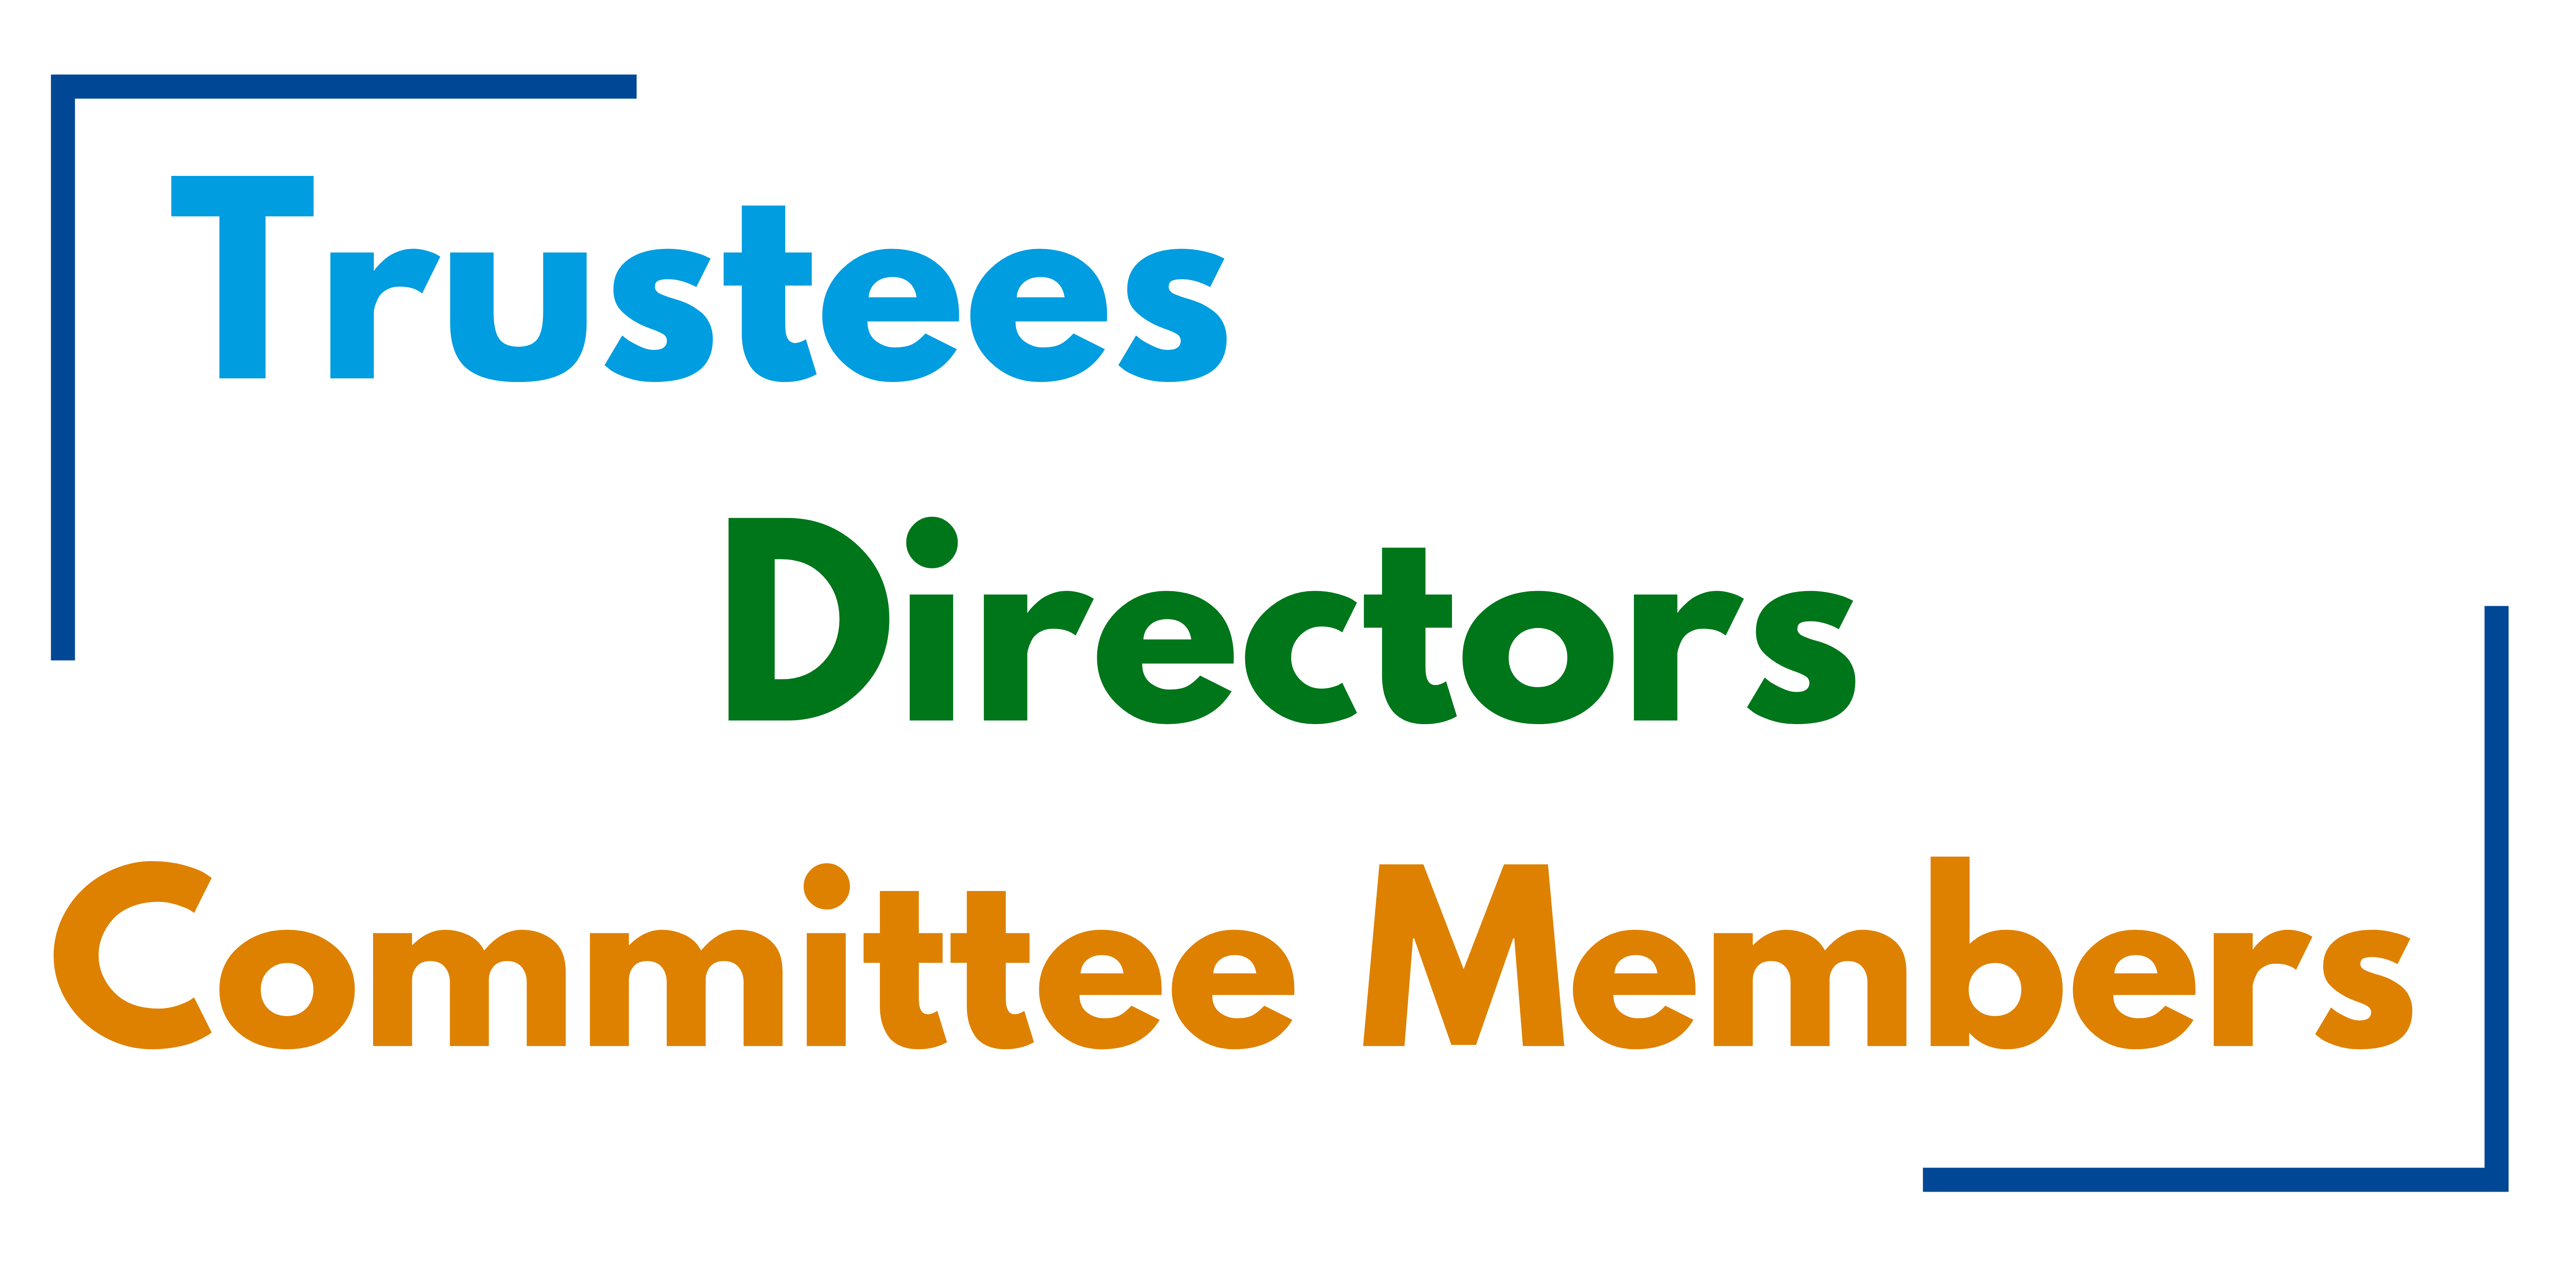 Trustees, Directors, Committee Members